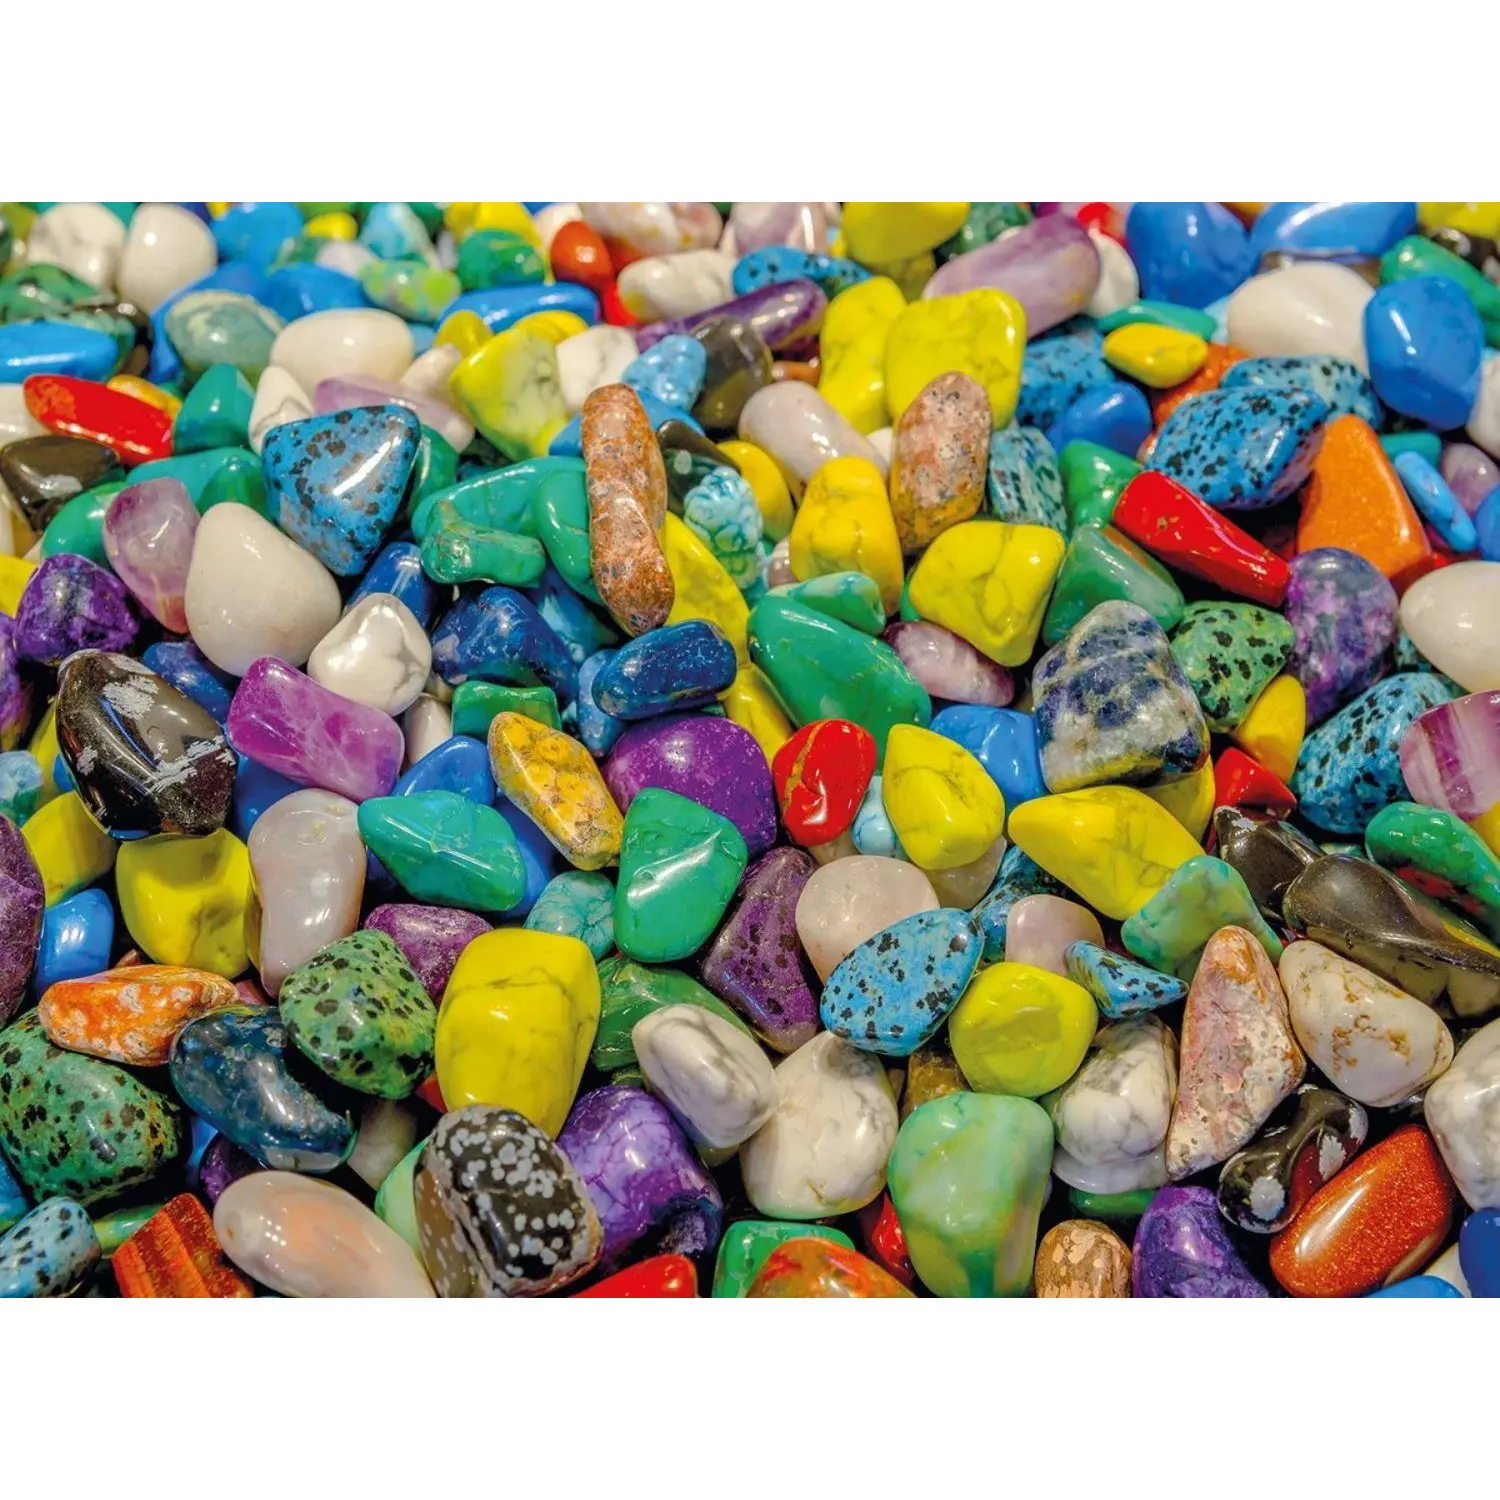 

Nova 1000 Parça Colorful Stones Puzzle - Pablo Hidalgo - Jigsaw Puzzle-Blue Puzzle Carton-Colorful Stones-challenging Puzzle-